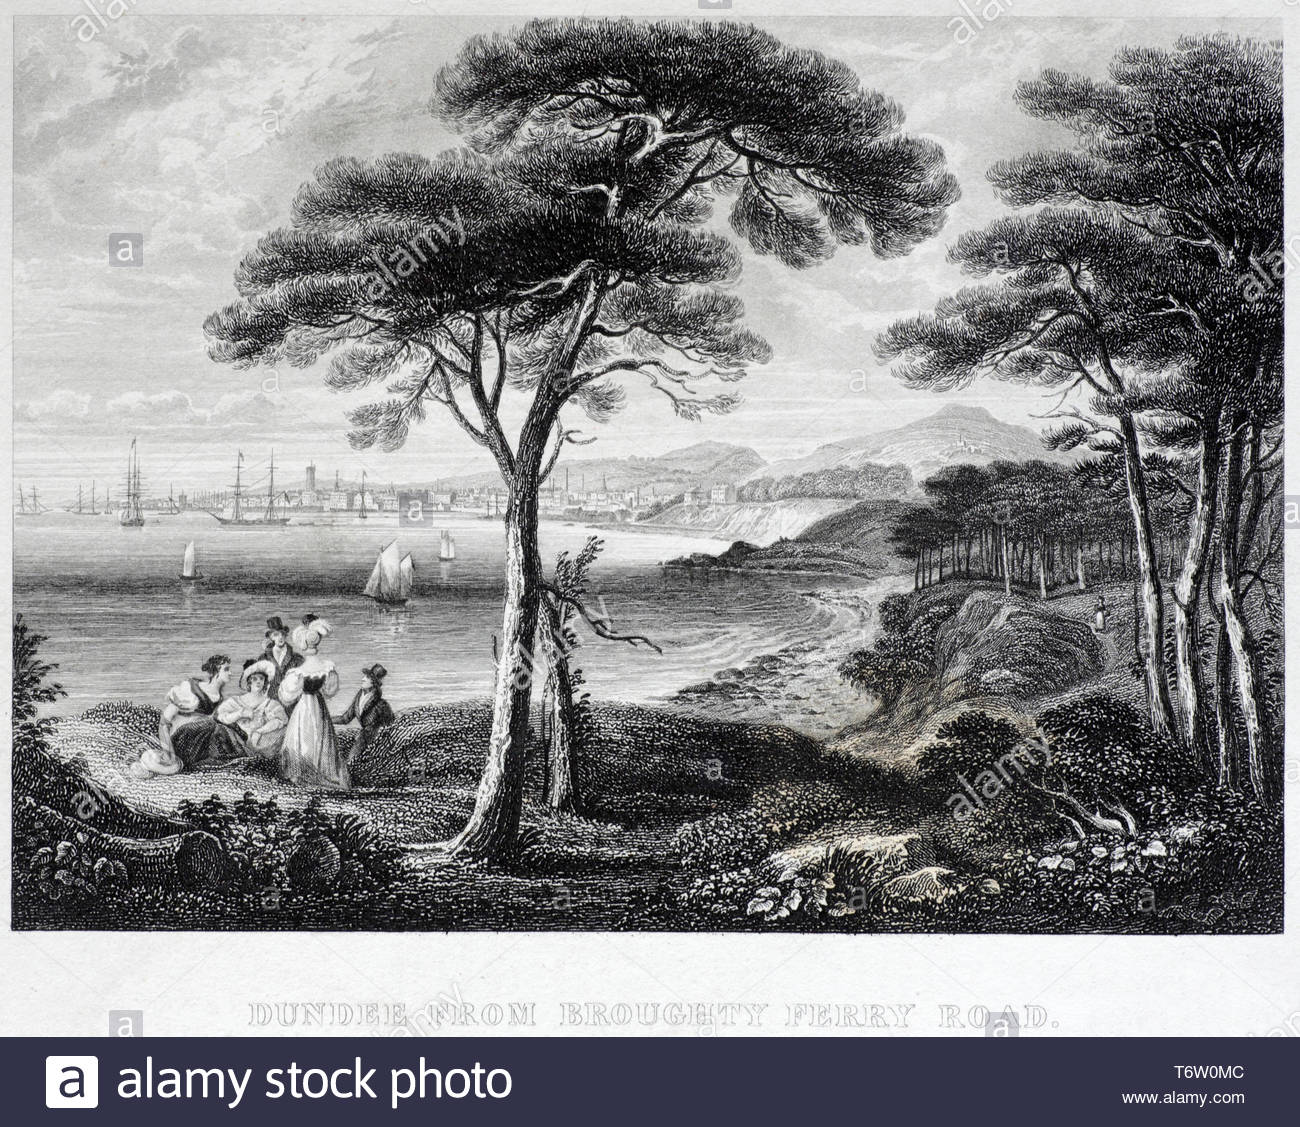 Anzeigen von Dundee in Schottland, von Broughty Ferry Road, antiken Gravur von 1843 Stockfoto